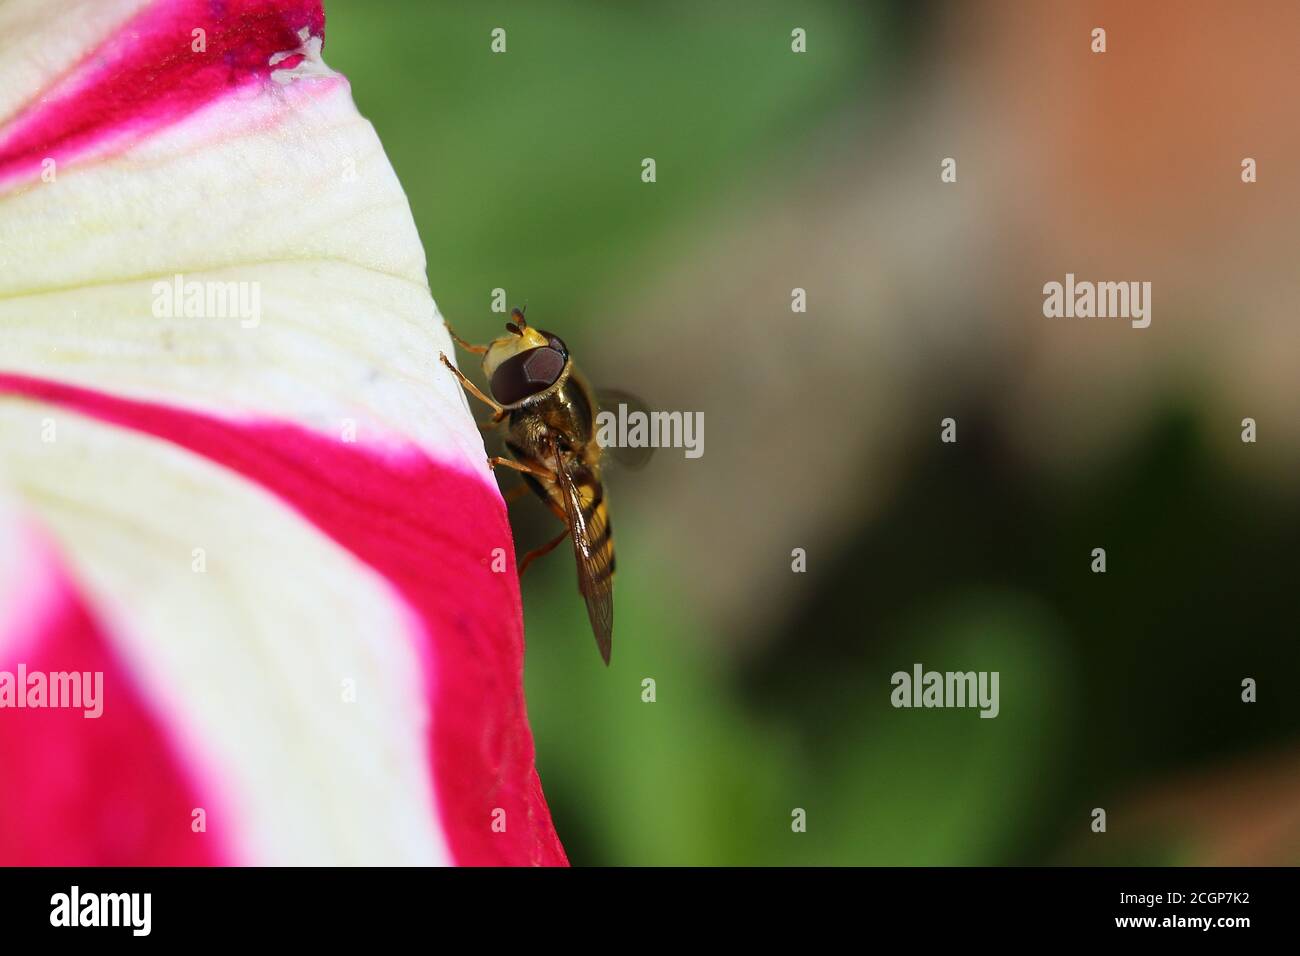 Gelb und schwarz gestreifte männliche Schwebfliege oder Blumenfliege, Syrphus ribesii, auf einer rosa weißen Petunienblume, Nahaufnahme, Seitenansicht, grüner diffuser Hintergrund Stockfoto